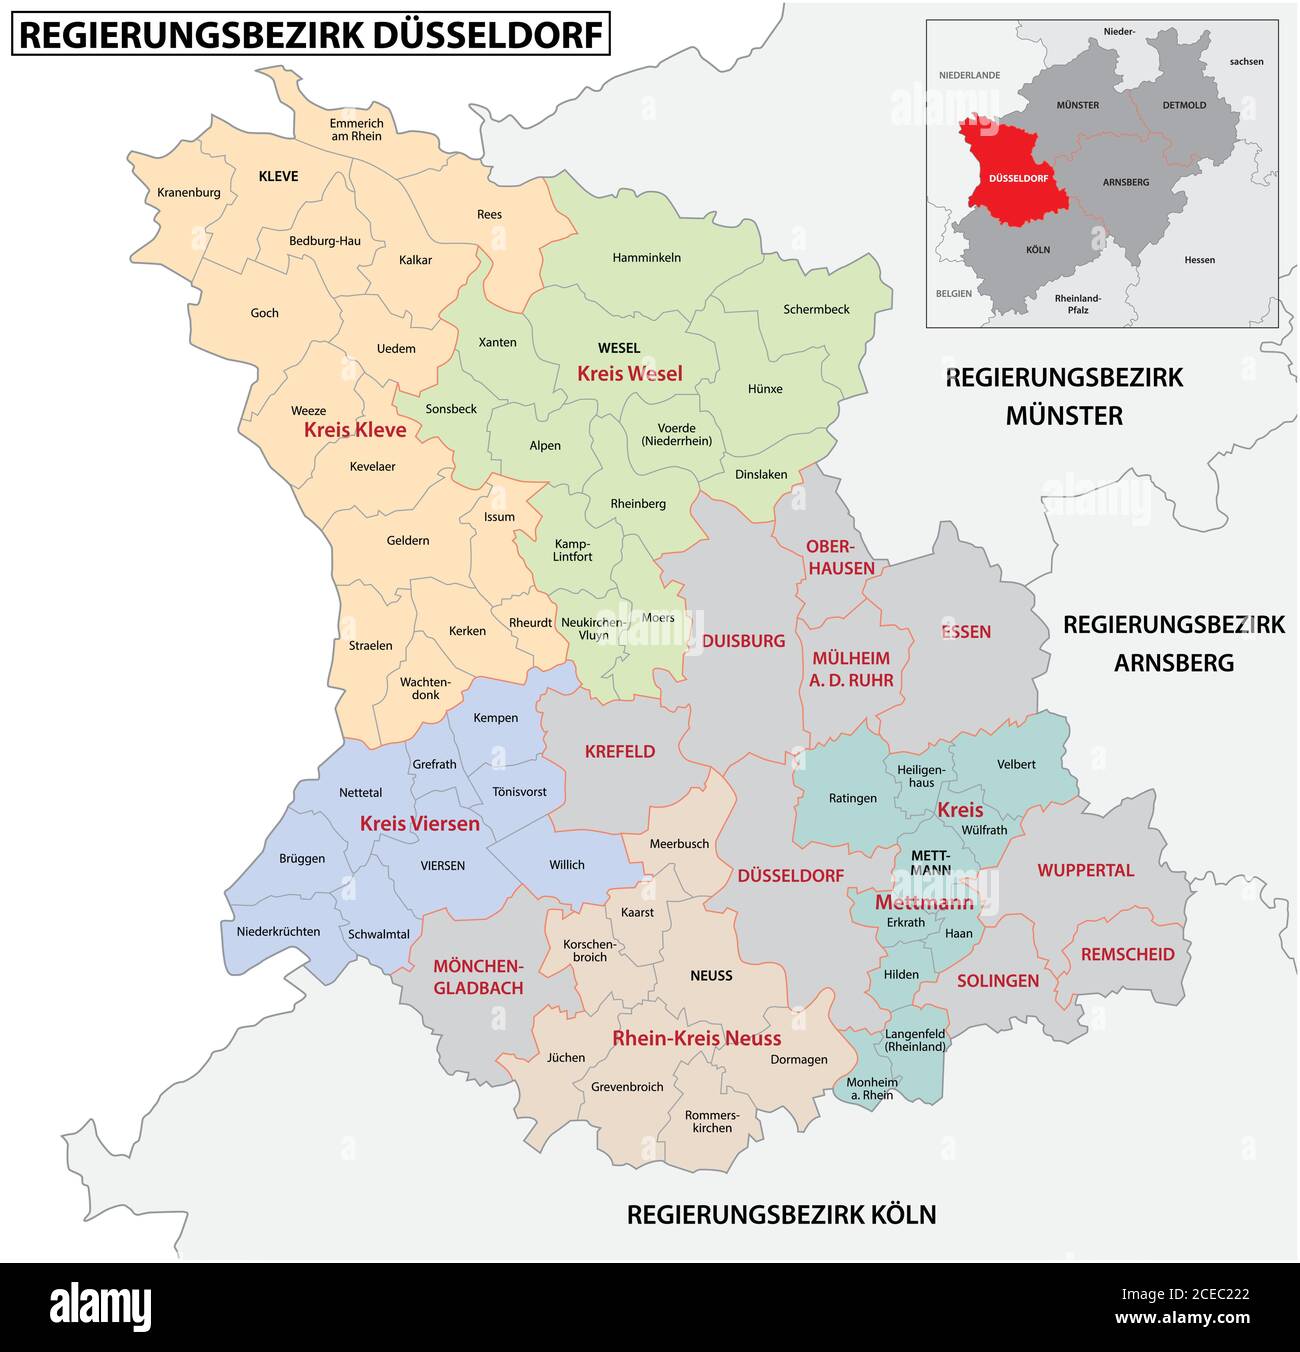 Carte vectorielle administrative de la région de Düsseldorf en allemand, Rhénanie-du-Nord-Westphalie, Germany.jpg Illustration de Vecteur